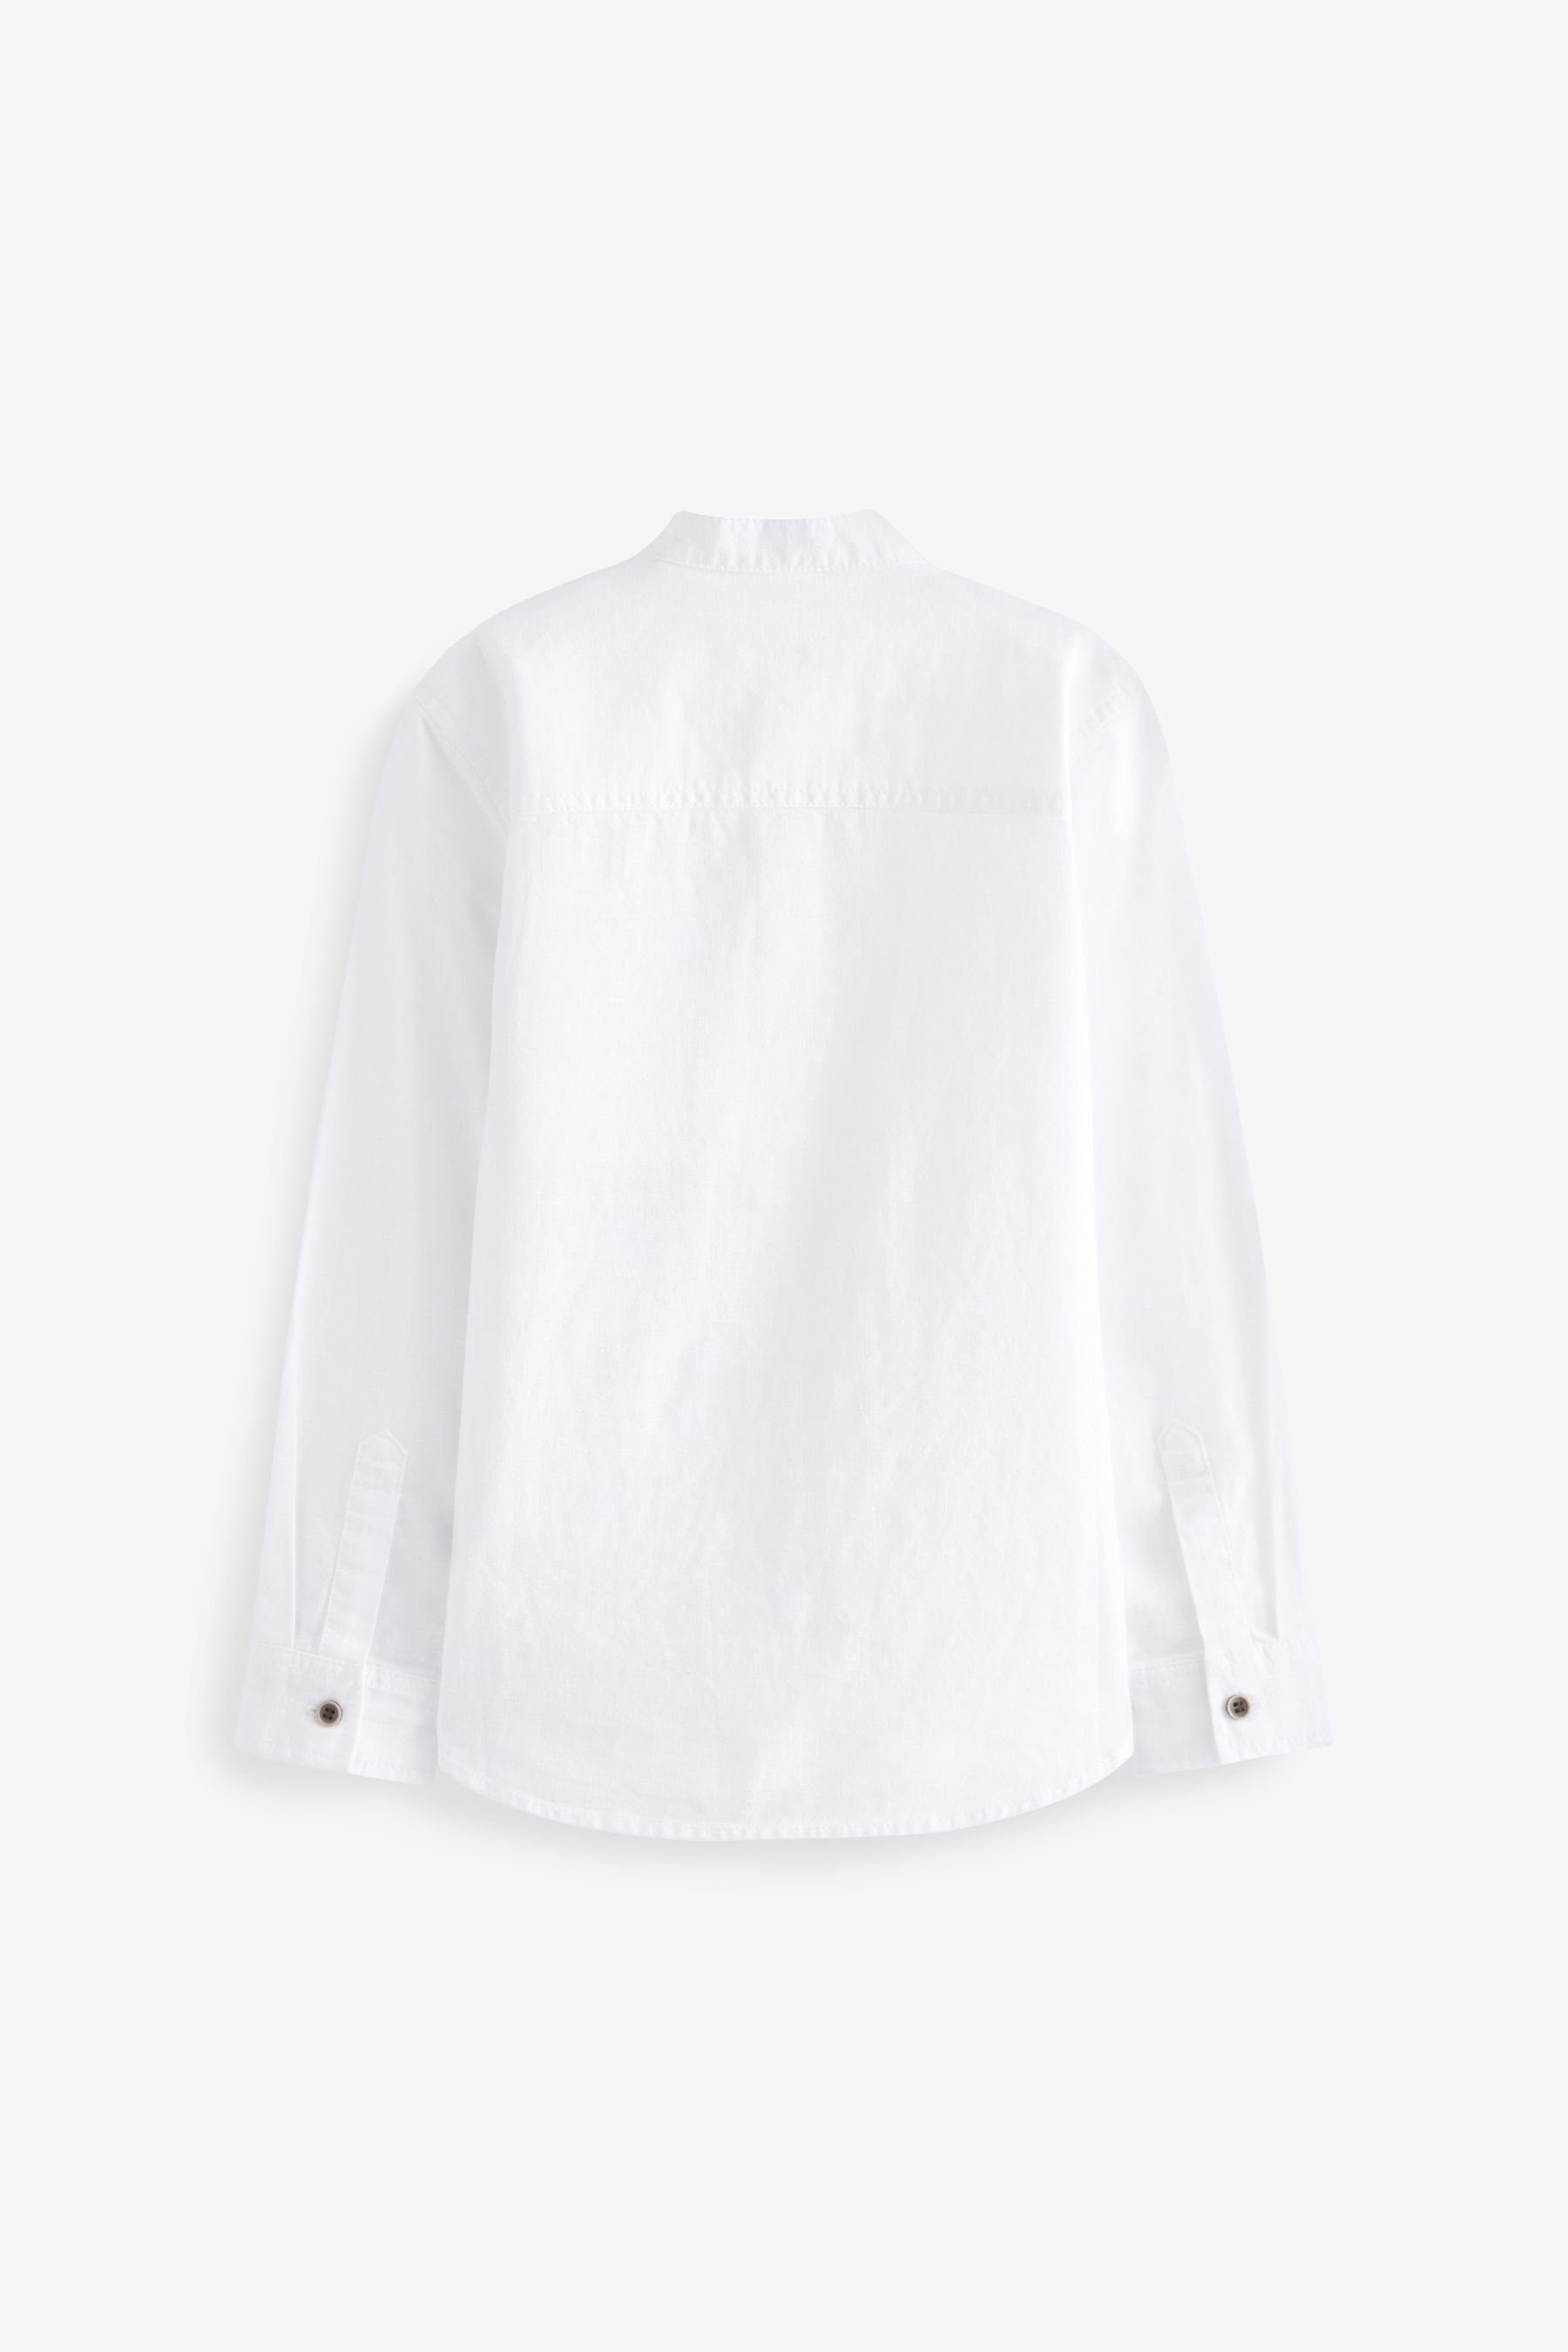 Next Langarmhemd Grandad-Hemd White Blend langen mit Ärmeln (1-tlg) Linen